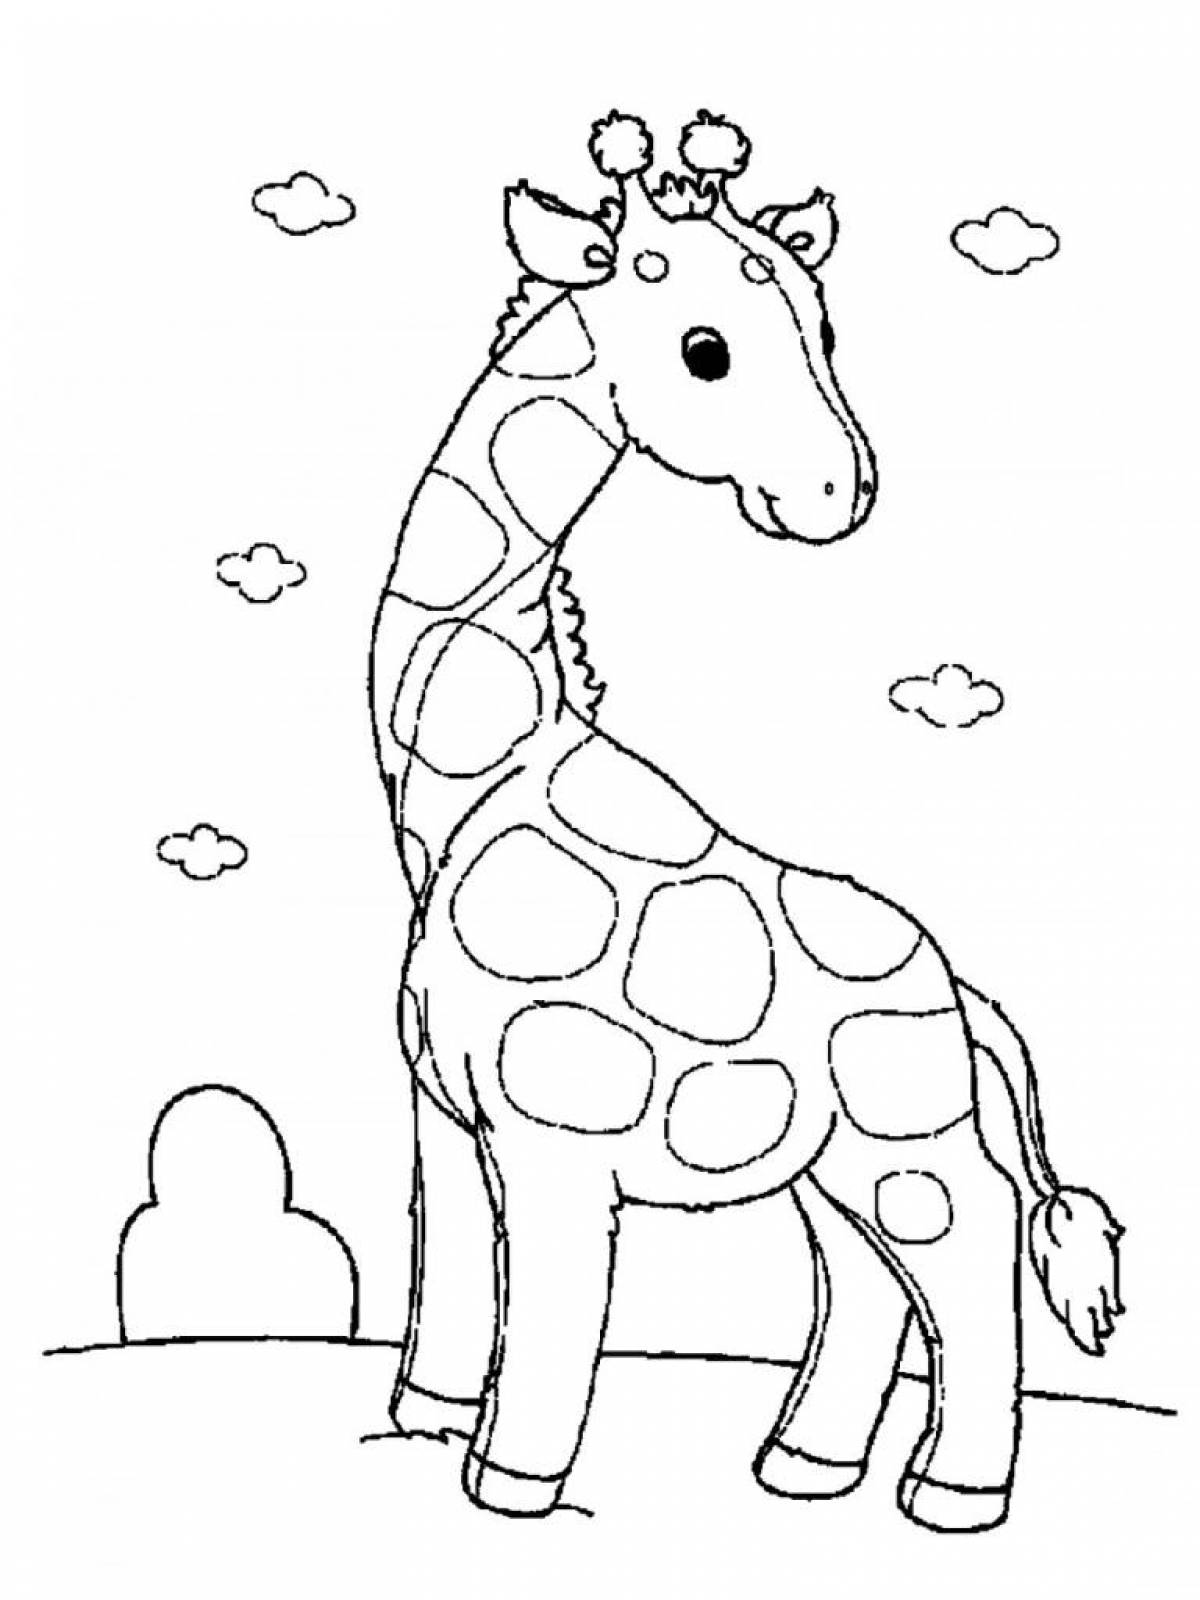 Живая раскраска жирафа для дошкольников